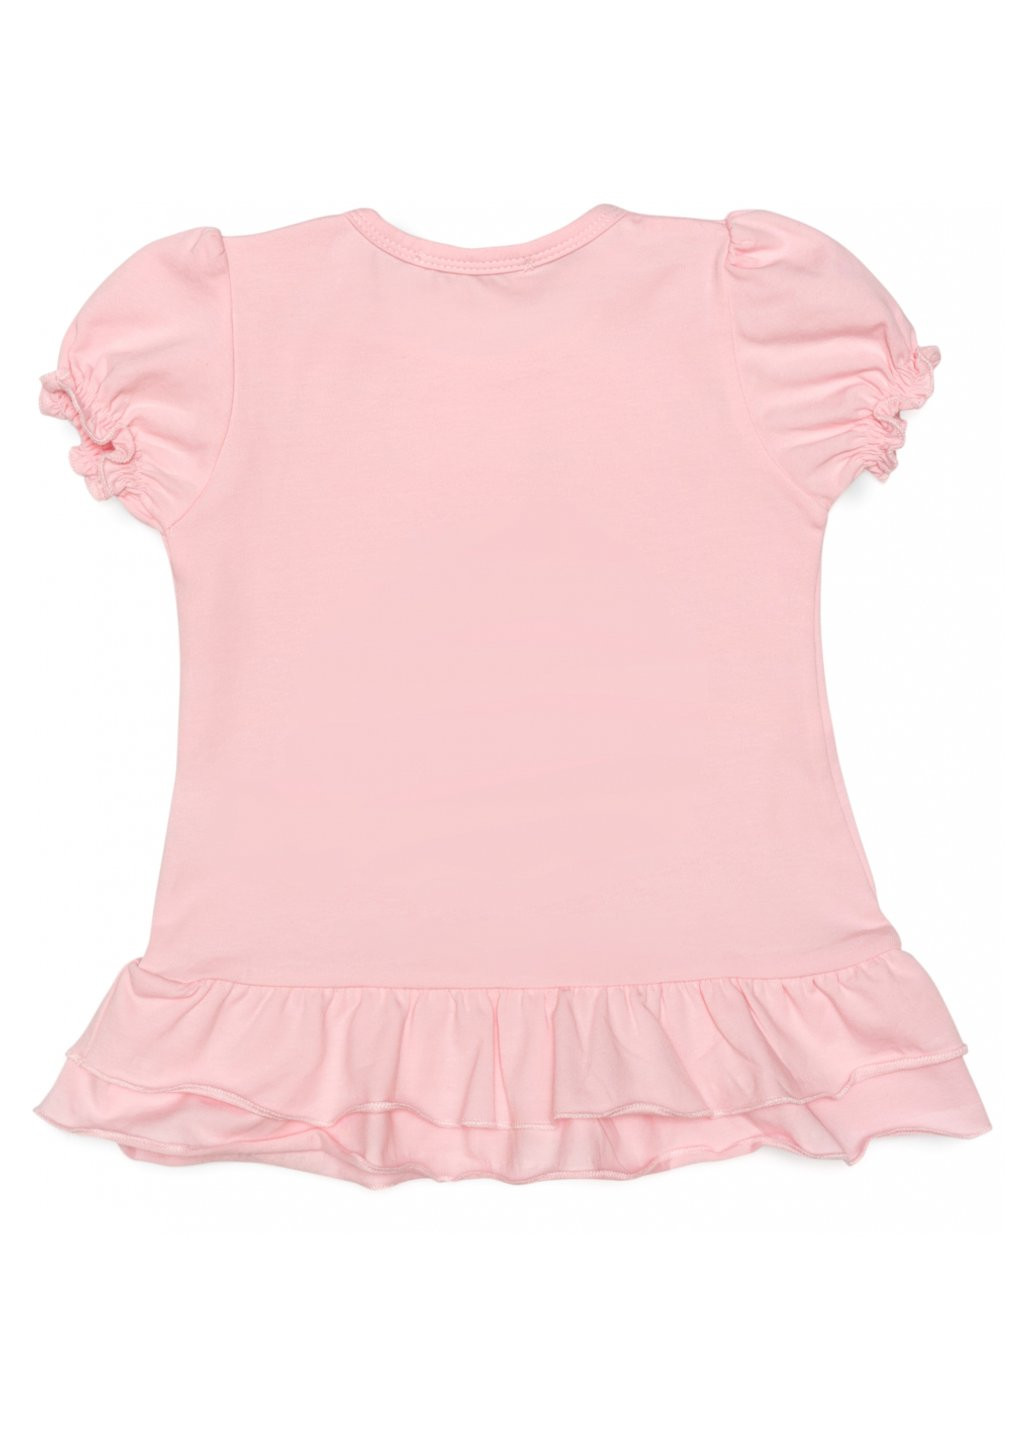 Комбинированная футболка детская с цветочками (14352-86g-pink) Breeze